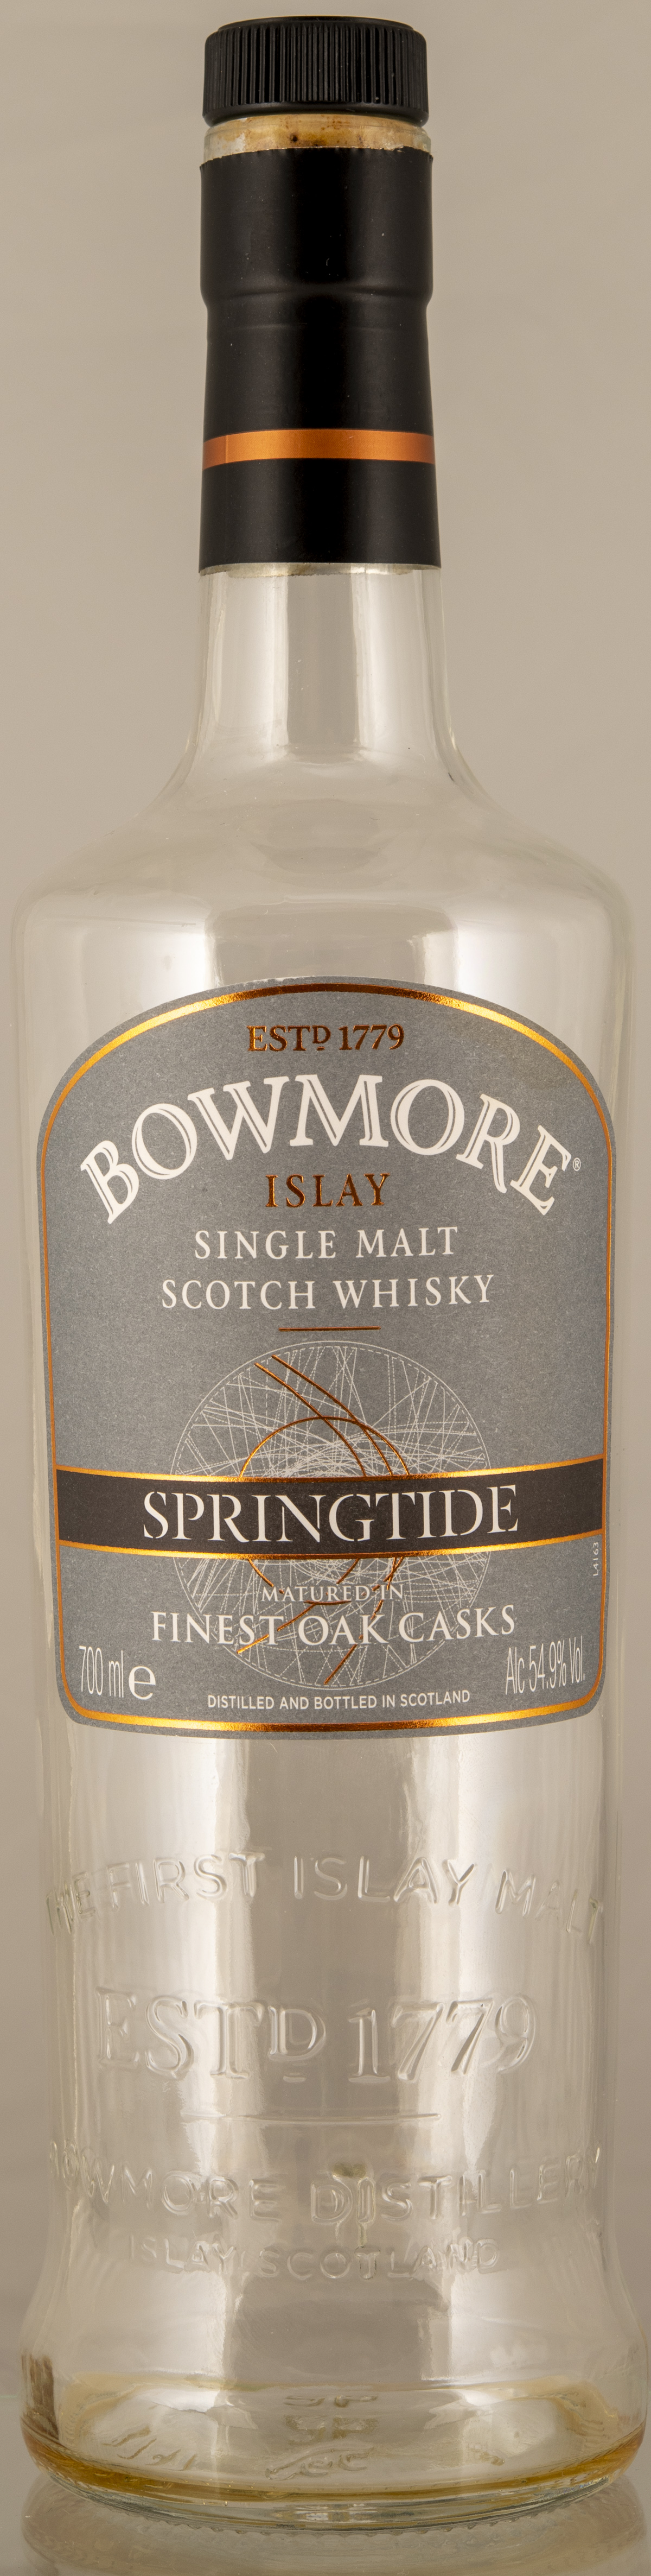 Billede: D85_8399 - Bowmore Springtide - bottle front.jpg